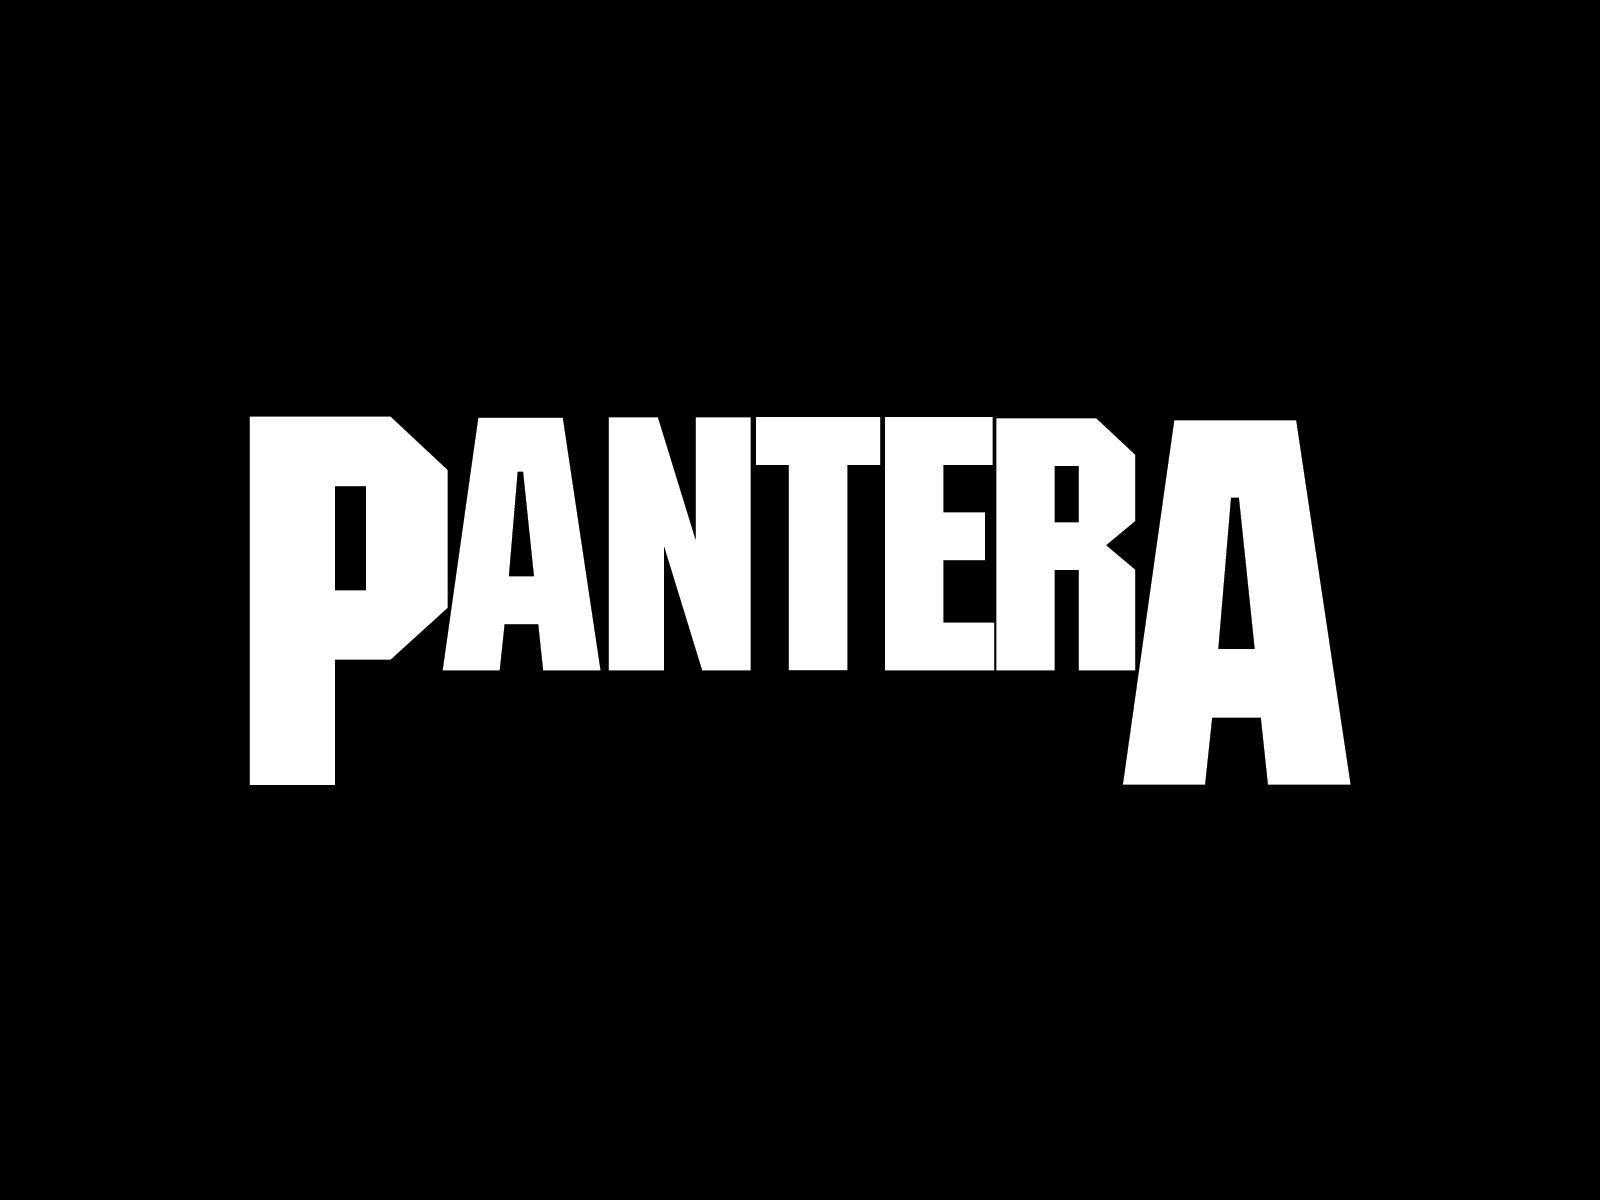 Pantera Logo - Pantera Logo wallpaper. Pantera. Band logos, Metal band logos